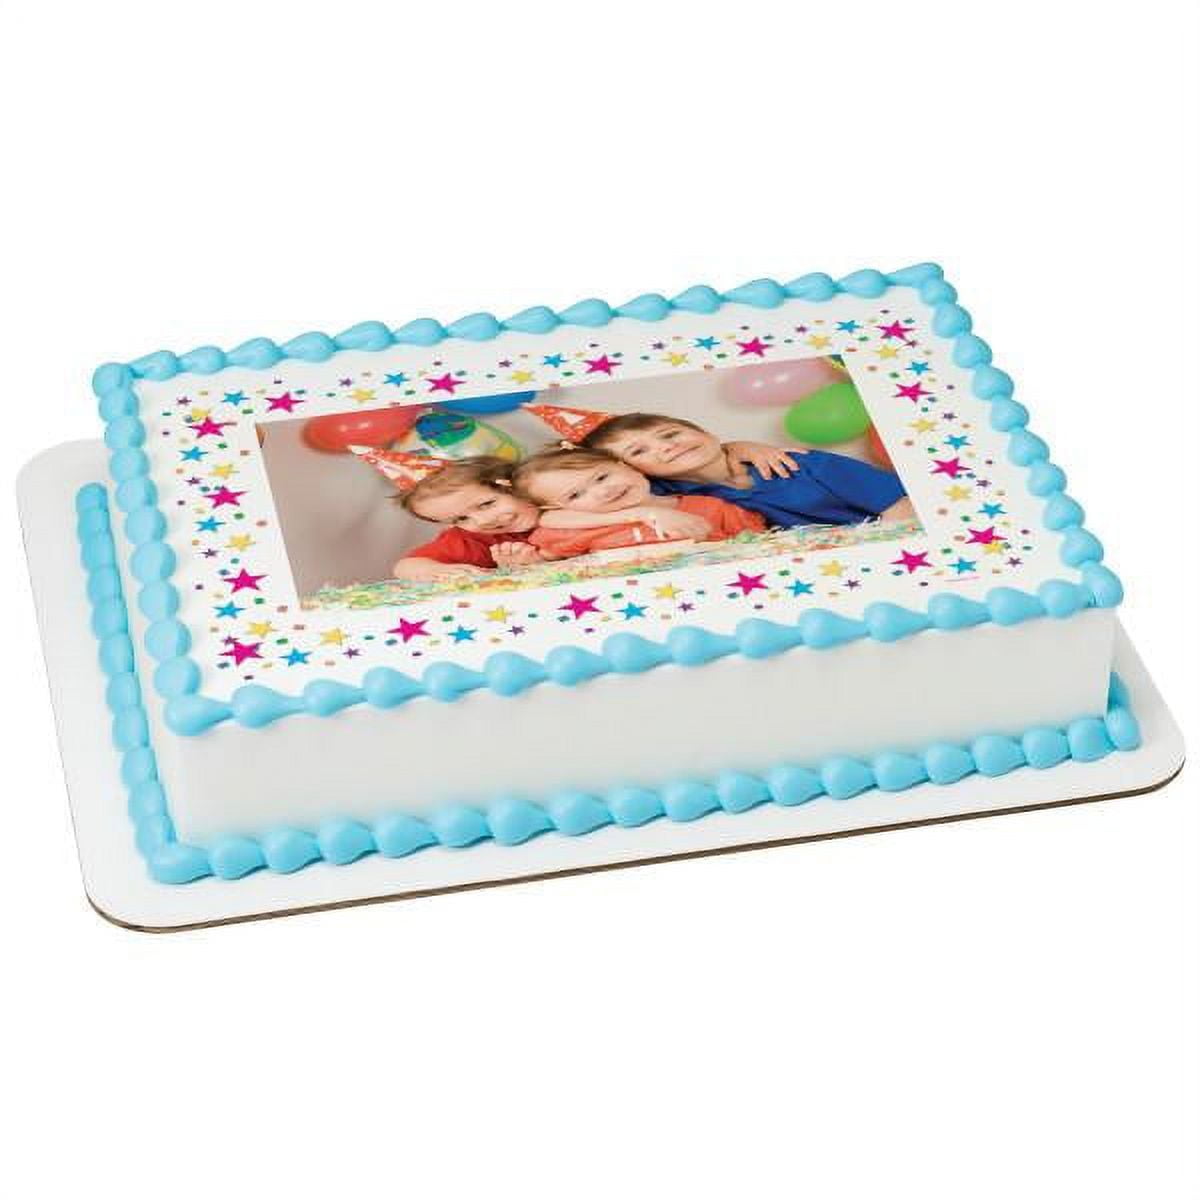 Stars Edible Cake Topper Image Frame - 1/4 Sheet 